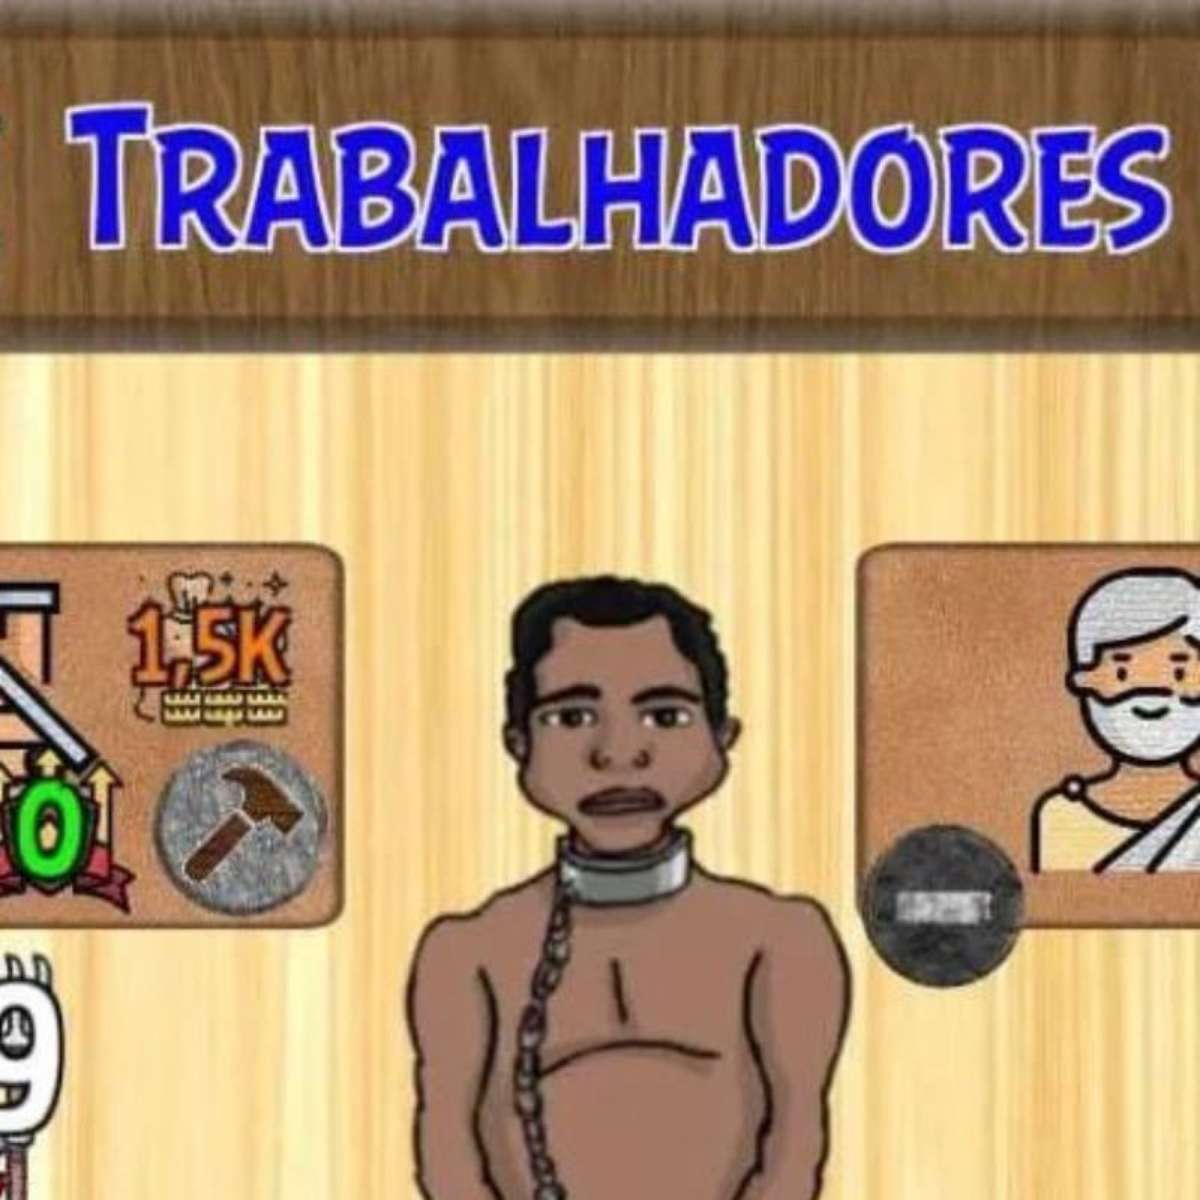 Educafro cobra R$ 100 mi do Google por jogo que simula escravidão